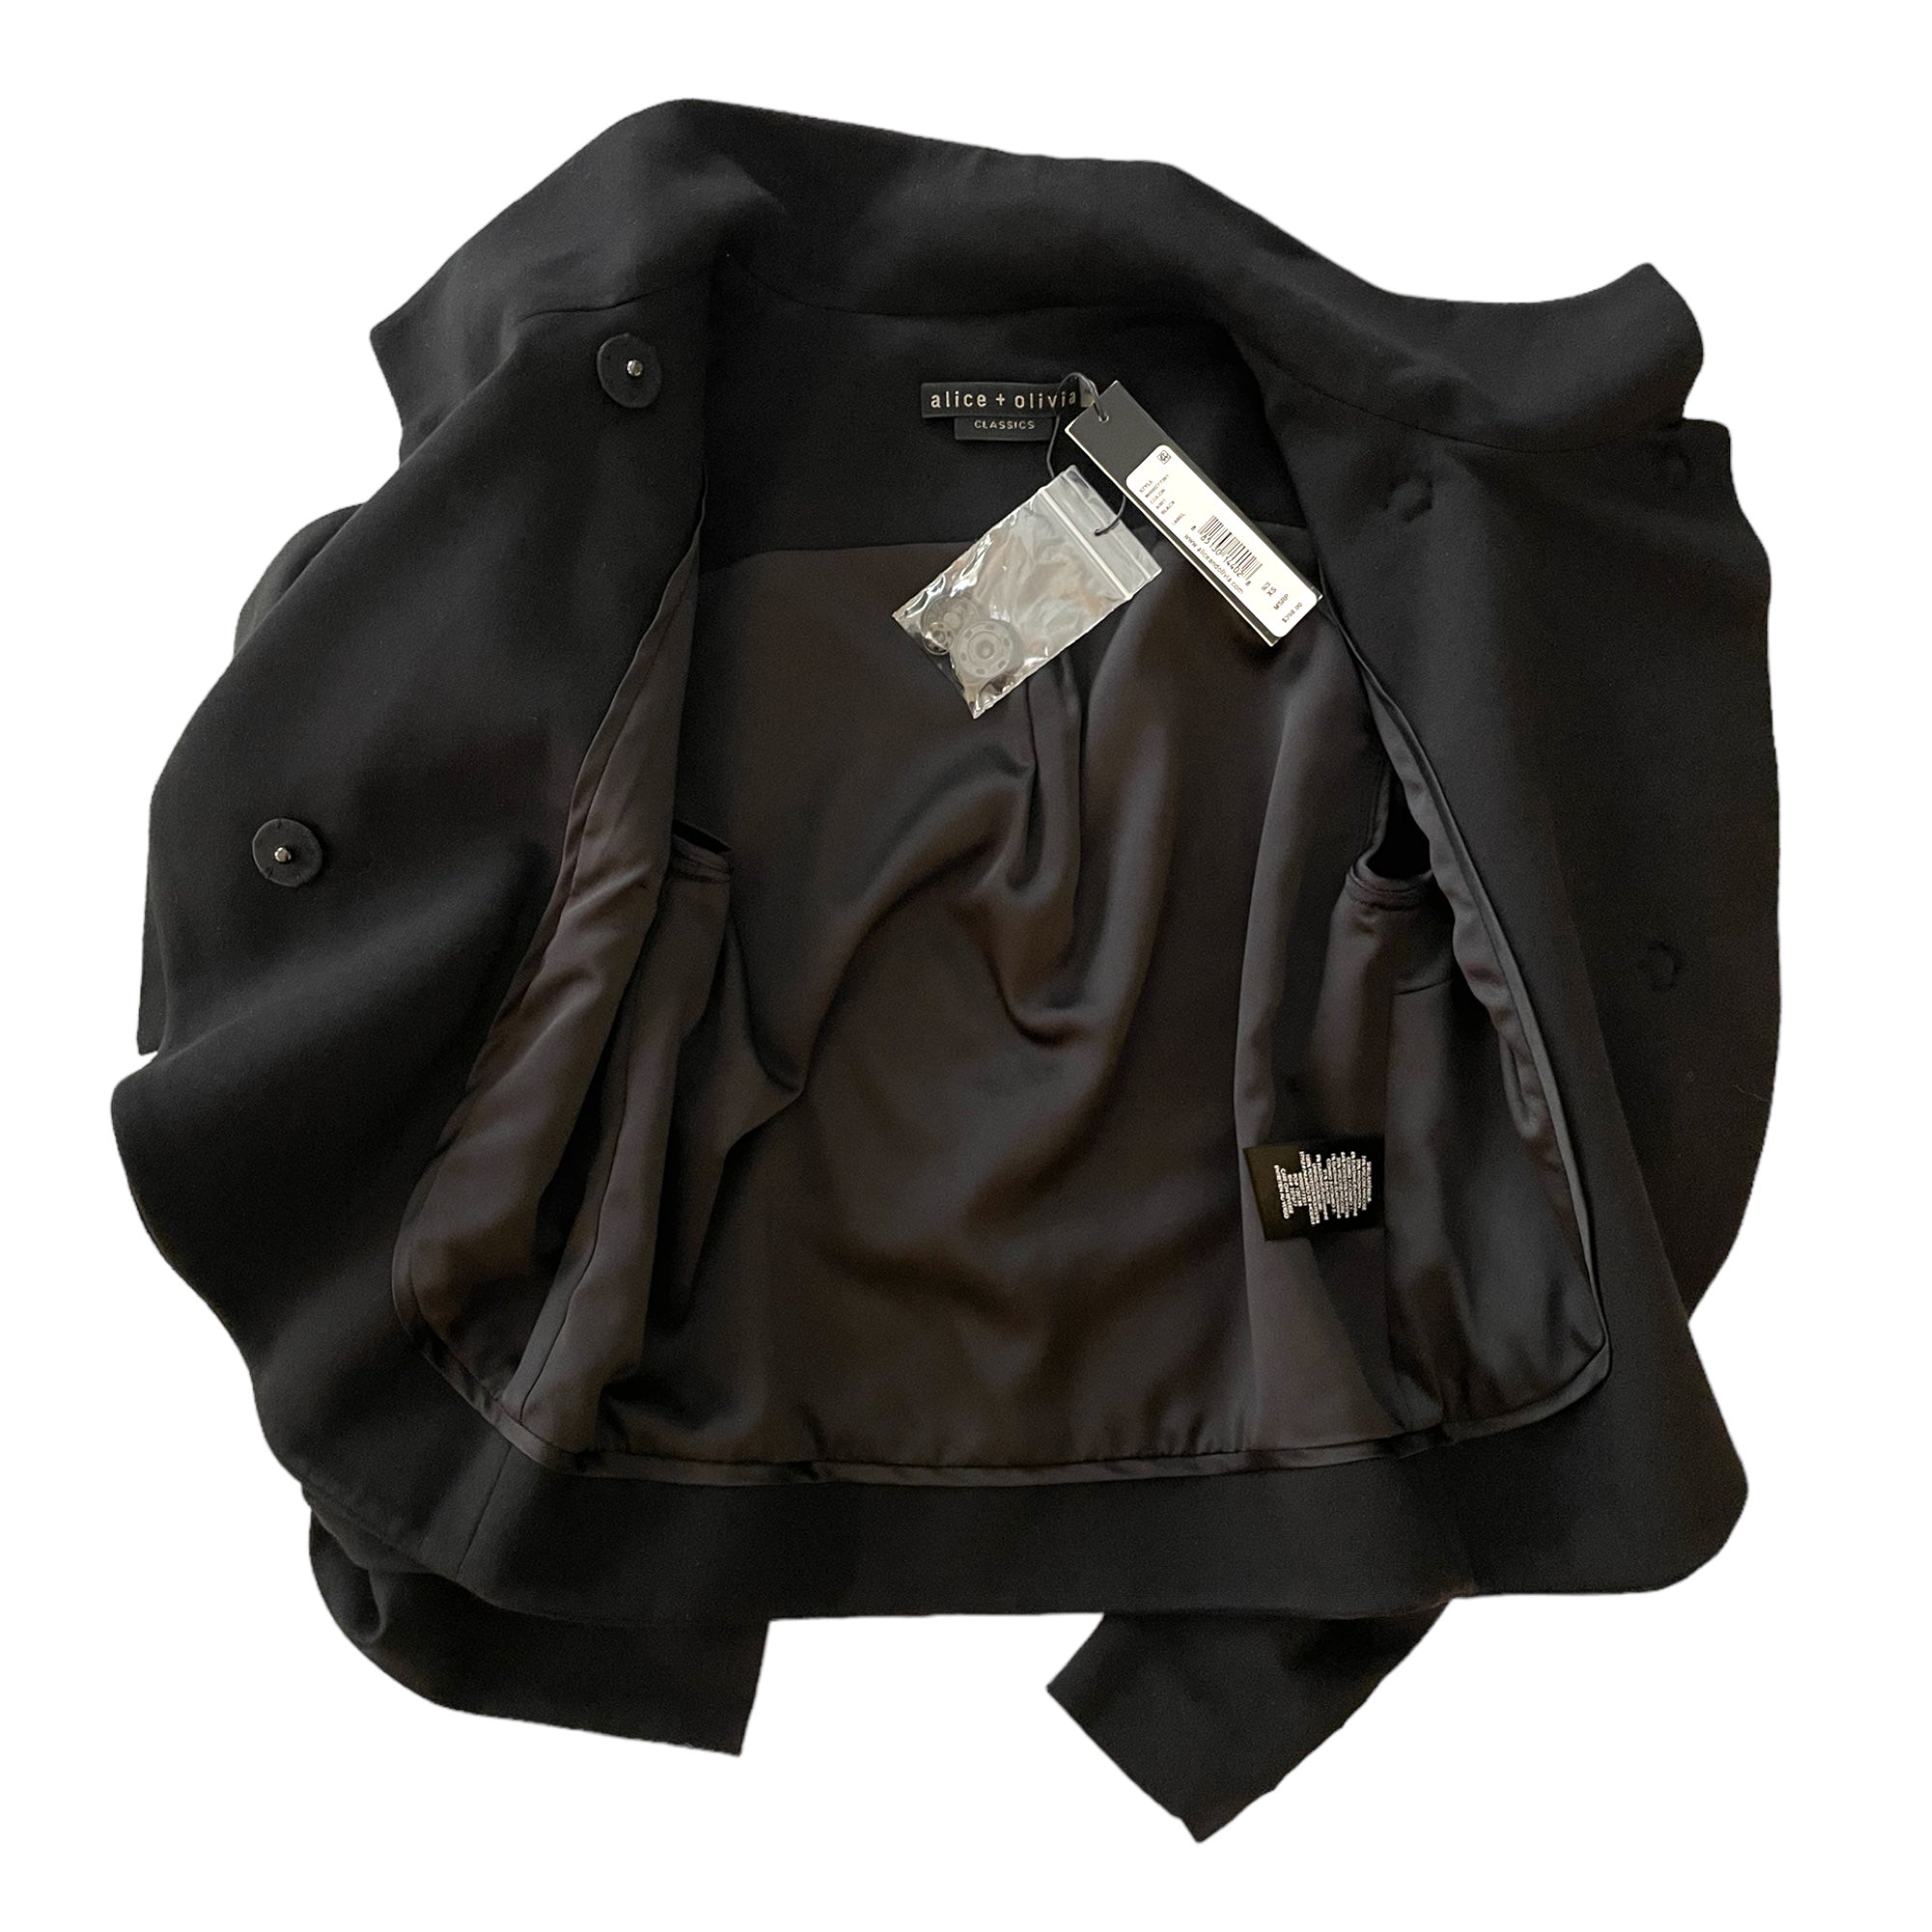 Alice + Olivia Black Bolero Jacket with Stunning Bow Accent  |SIZE: XS|